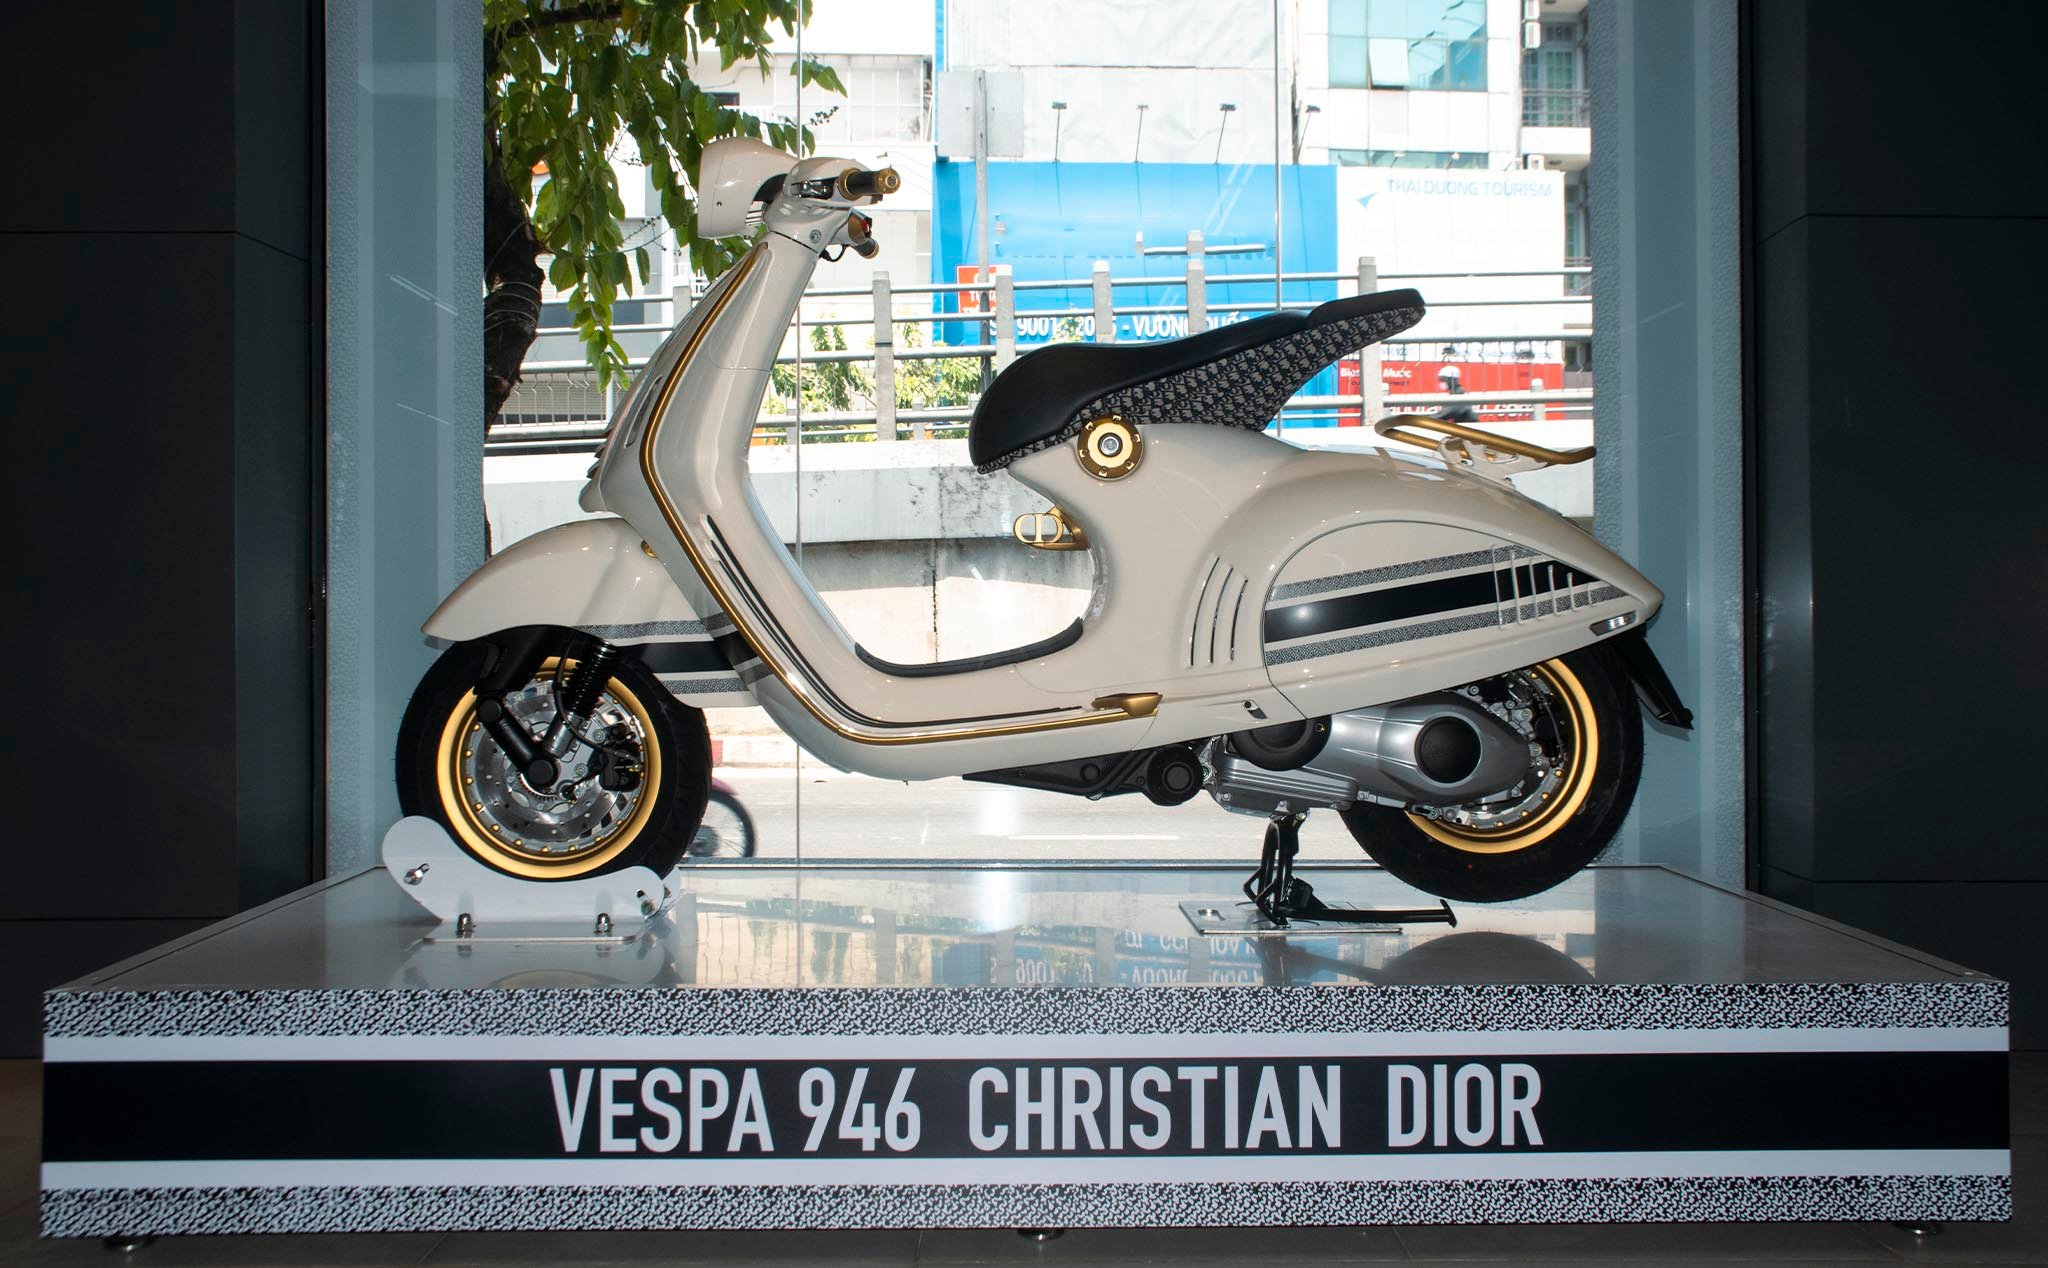 Giới thiệu Vespa 946 Christian Dior: Đẹp, độc, và (rất) đắt